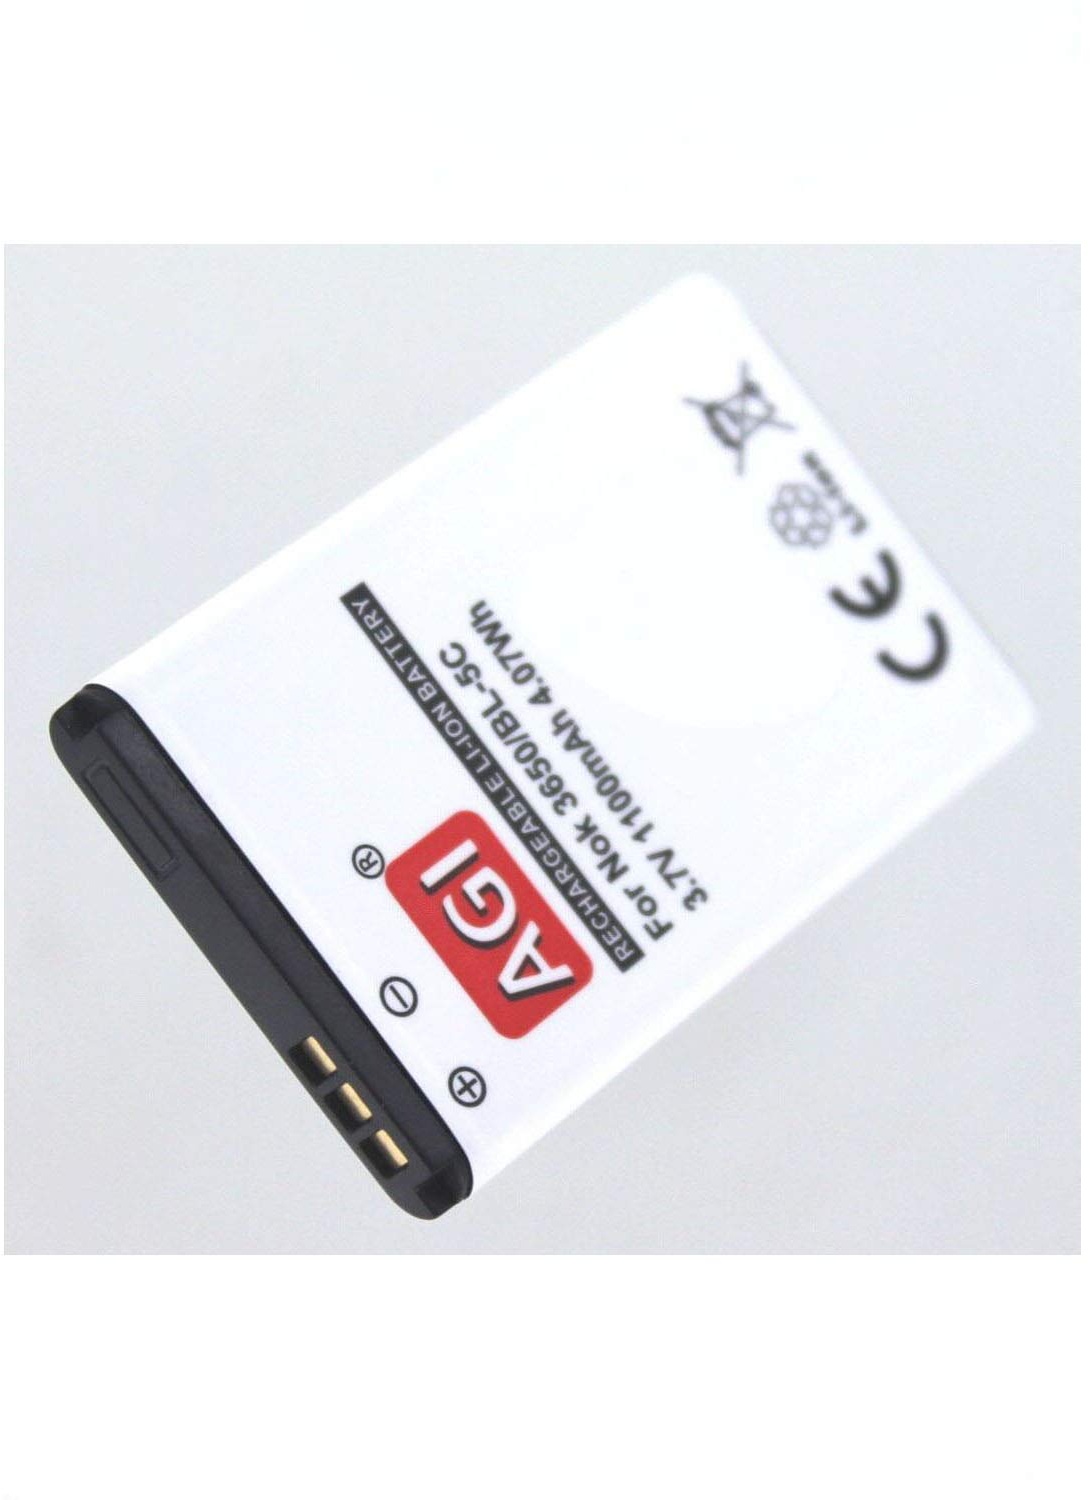 MobiloTec Akku kompatibel mit Simvalley PX-3298-675, Li-Ion 1000 mAh, Batterie